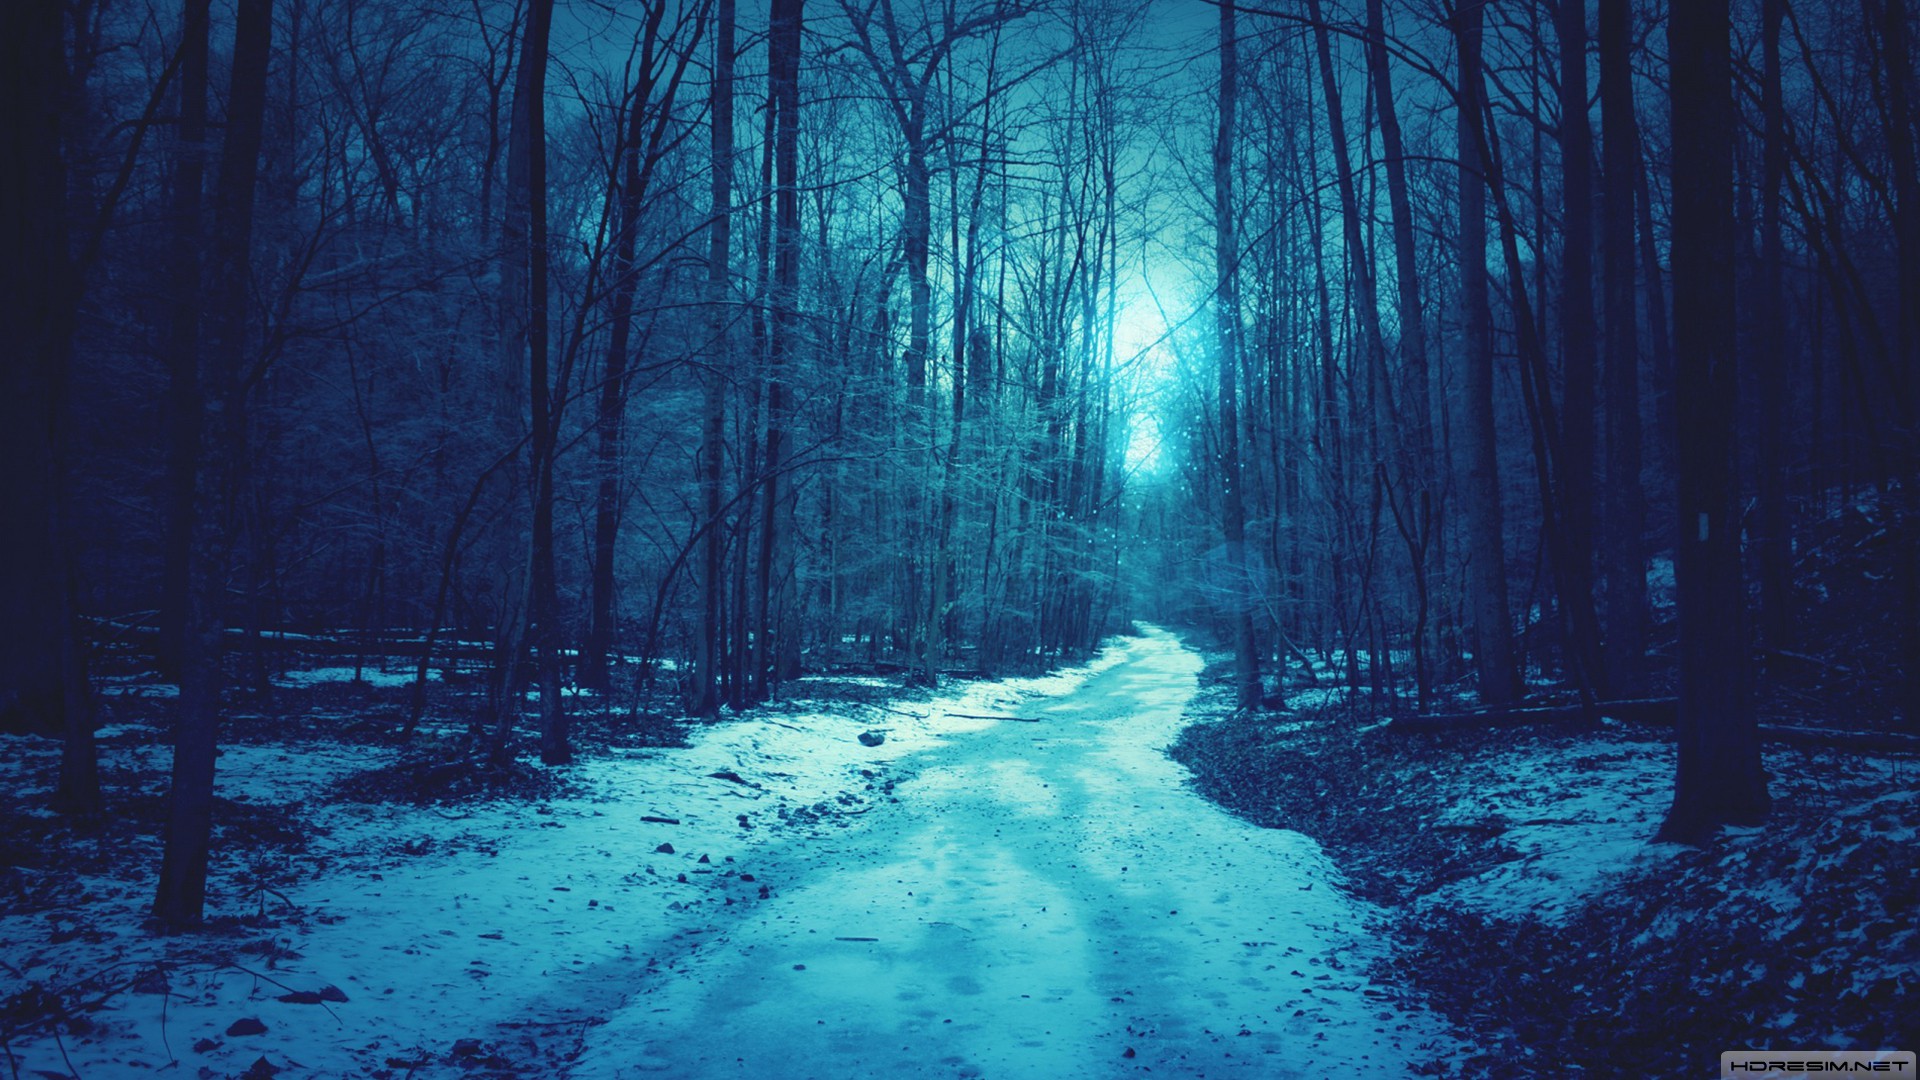 kış,kar,gece,orman,yol,ağaç